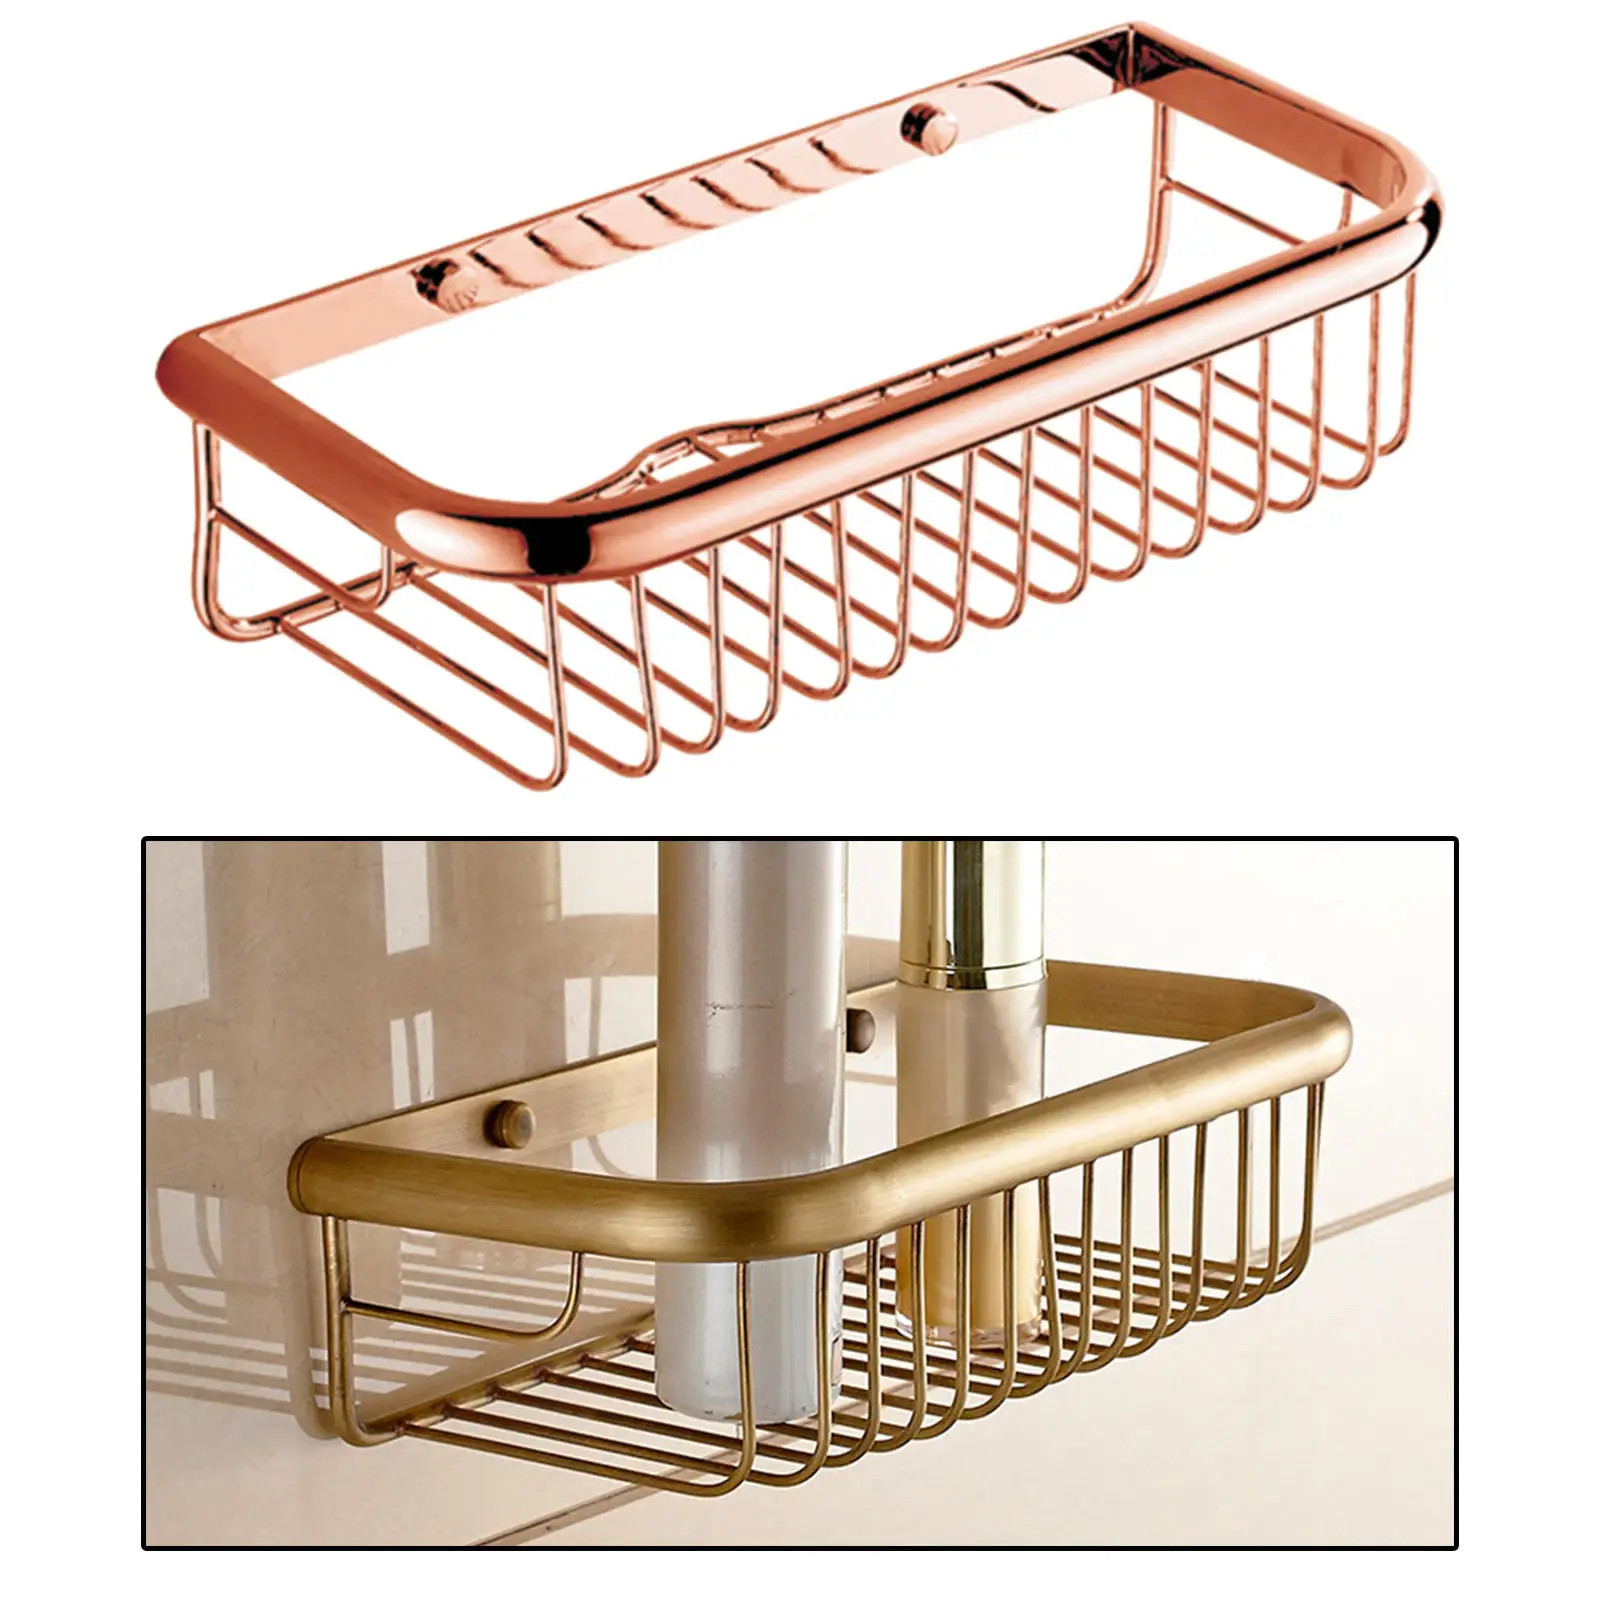 Solid Copper 30cm Bathroom Shower Shelf Caddy Basket Wall Mount